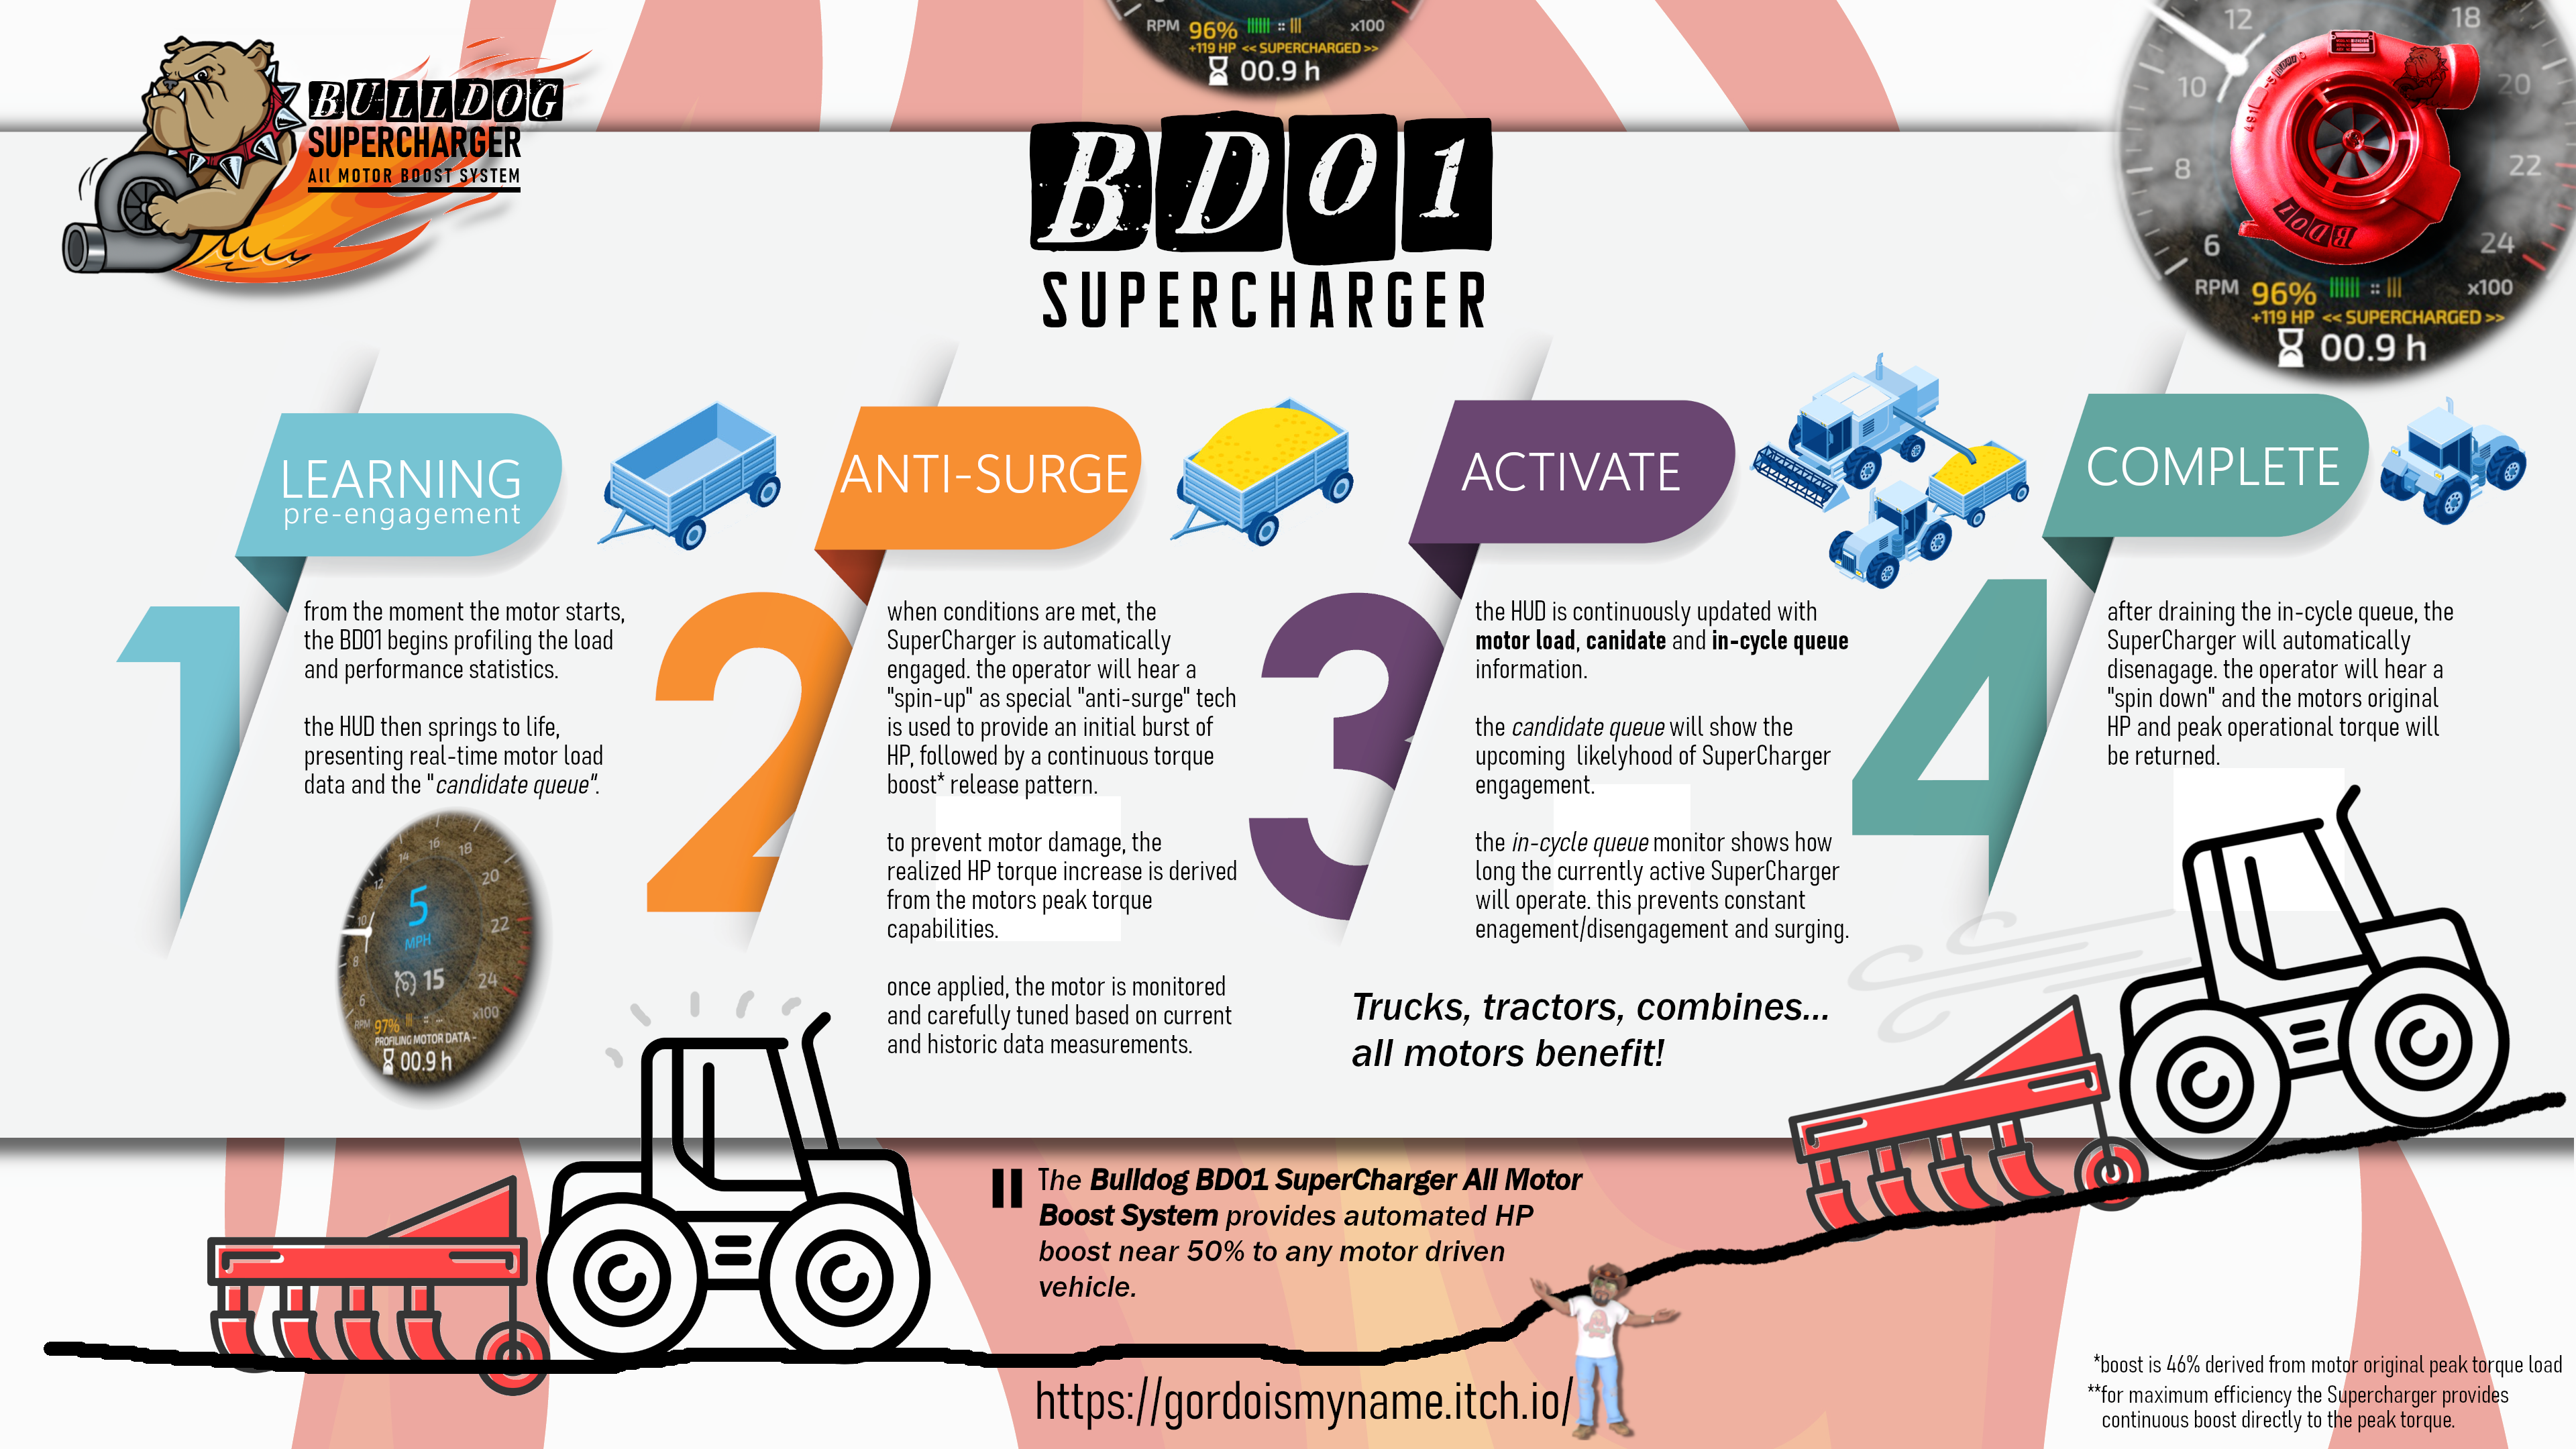 SuperCharger - The Bulldog BD01